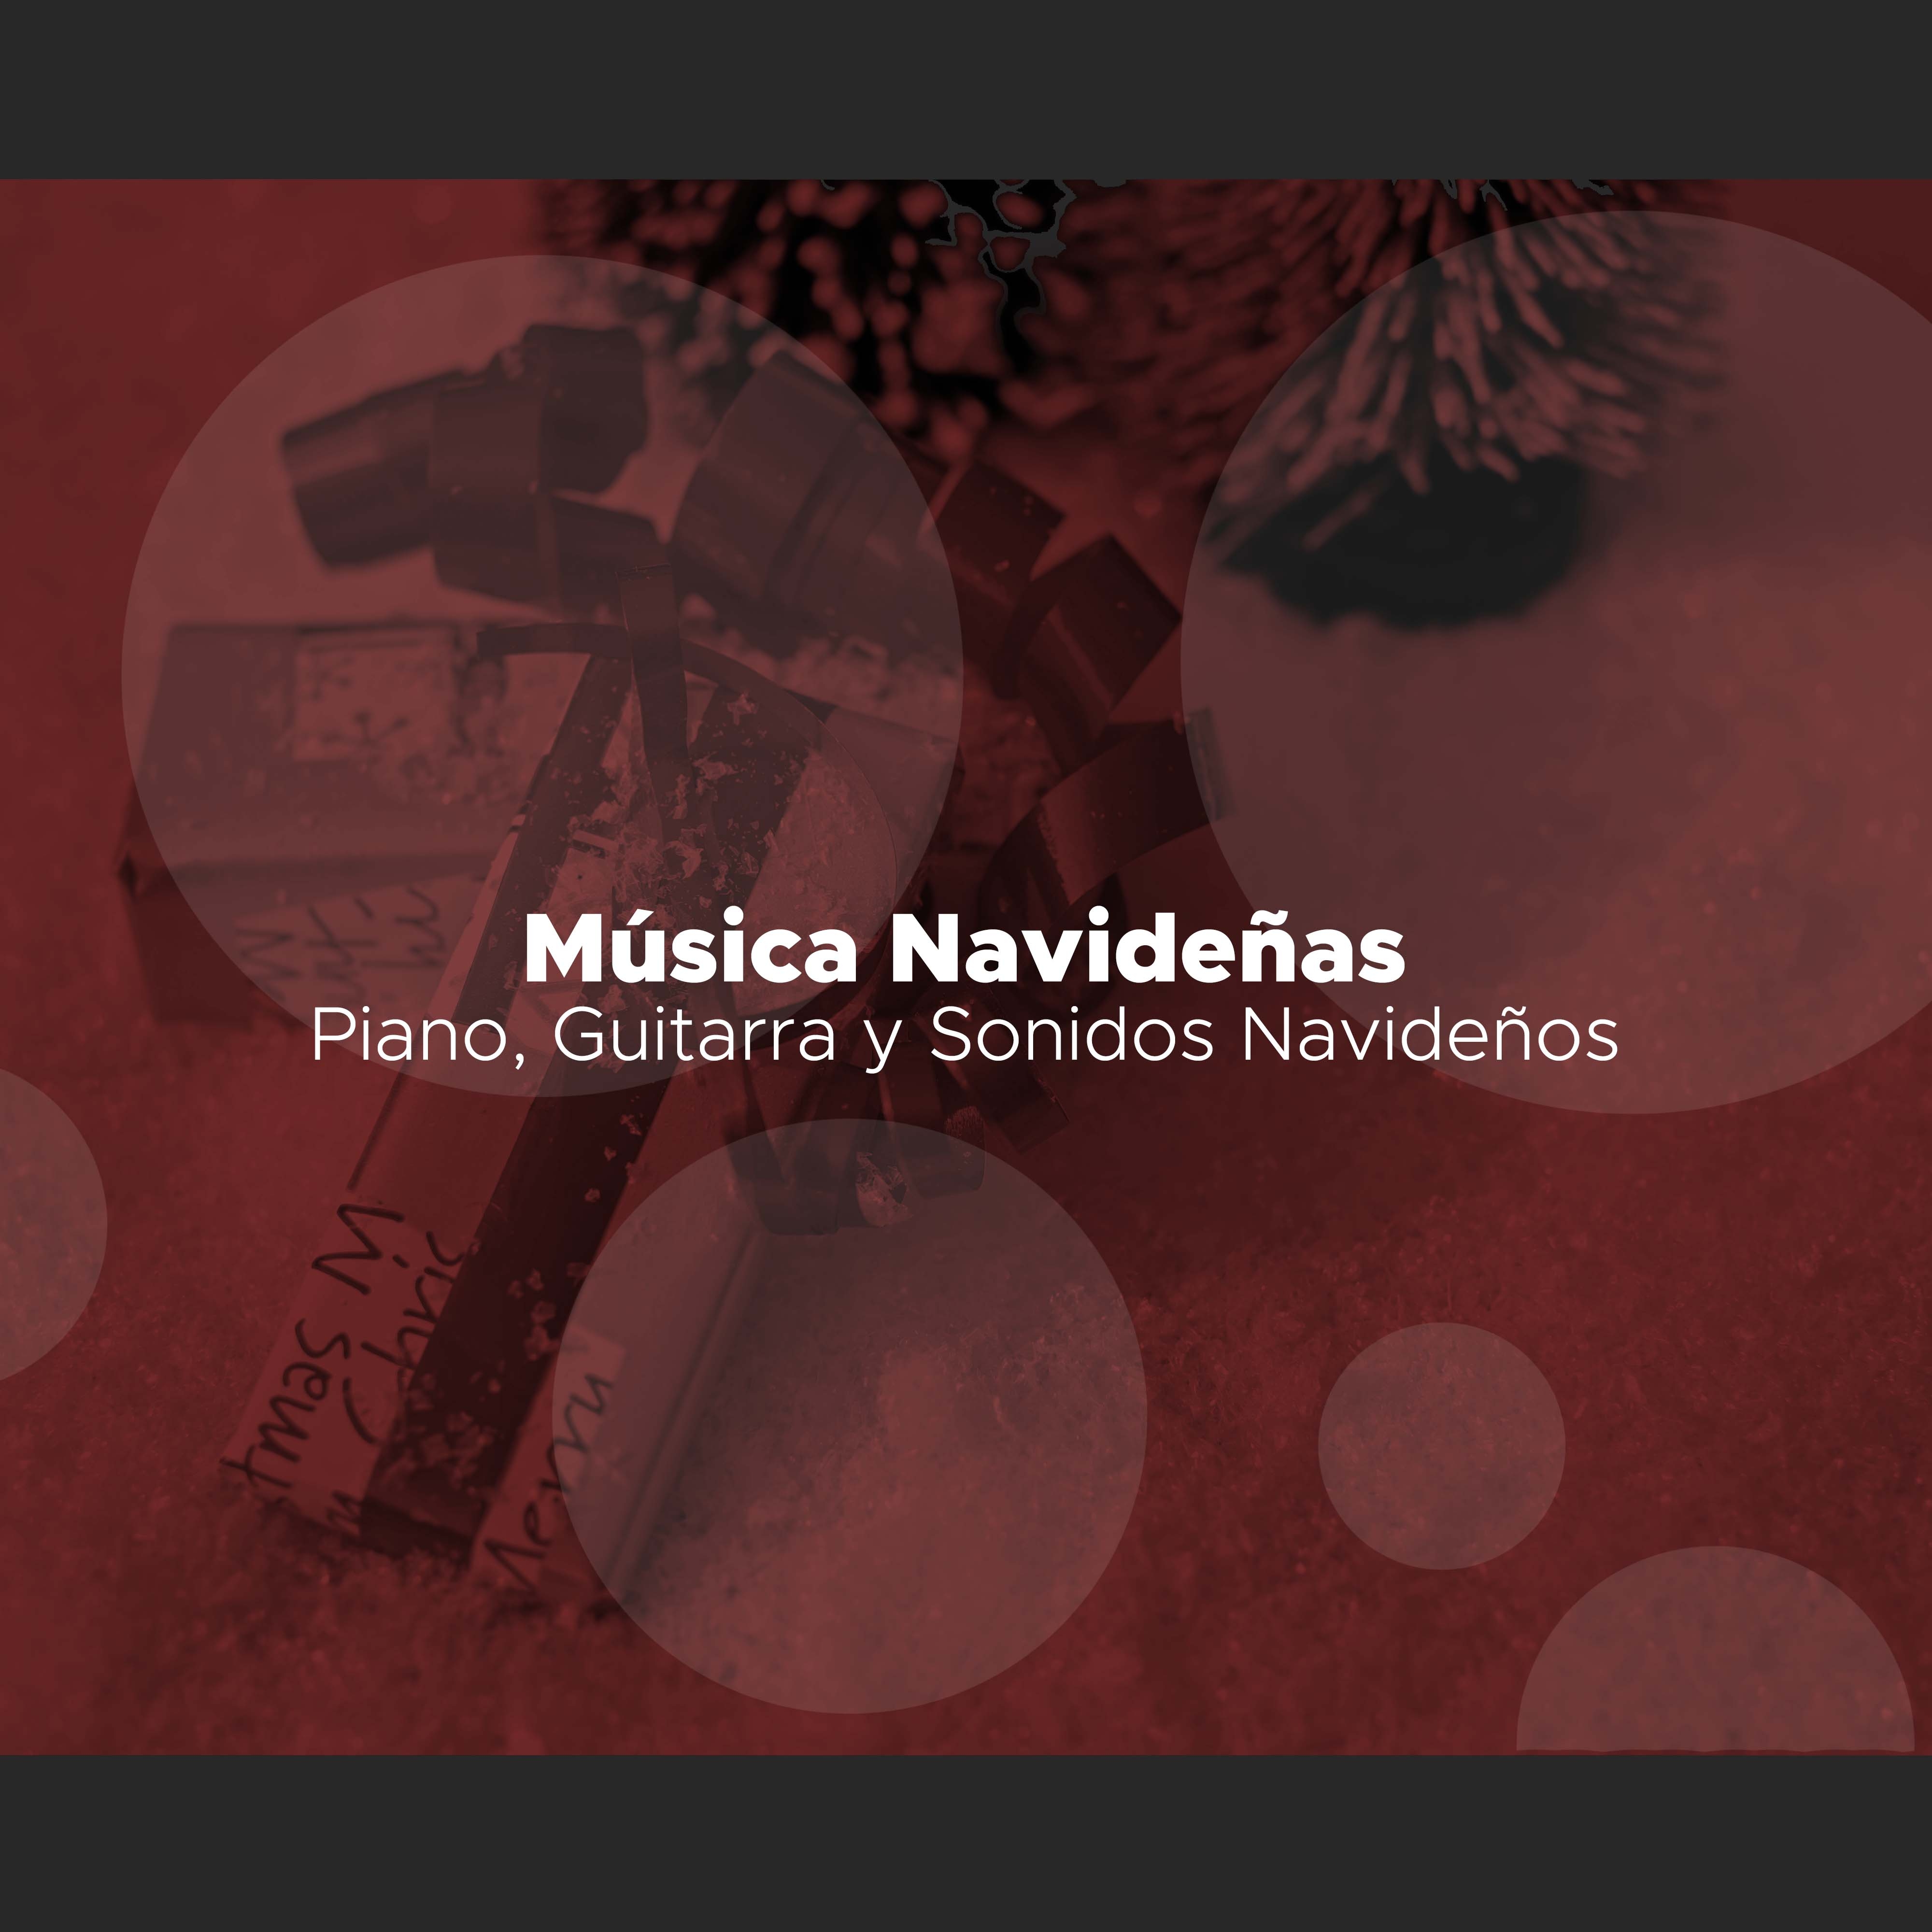 Musica Navideñas - Piano, Guitarra y Sonidos Navideños